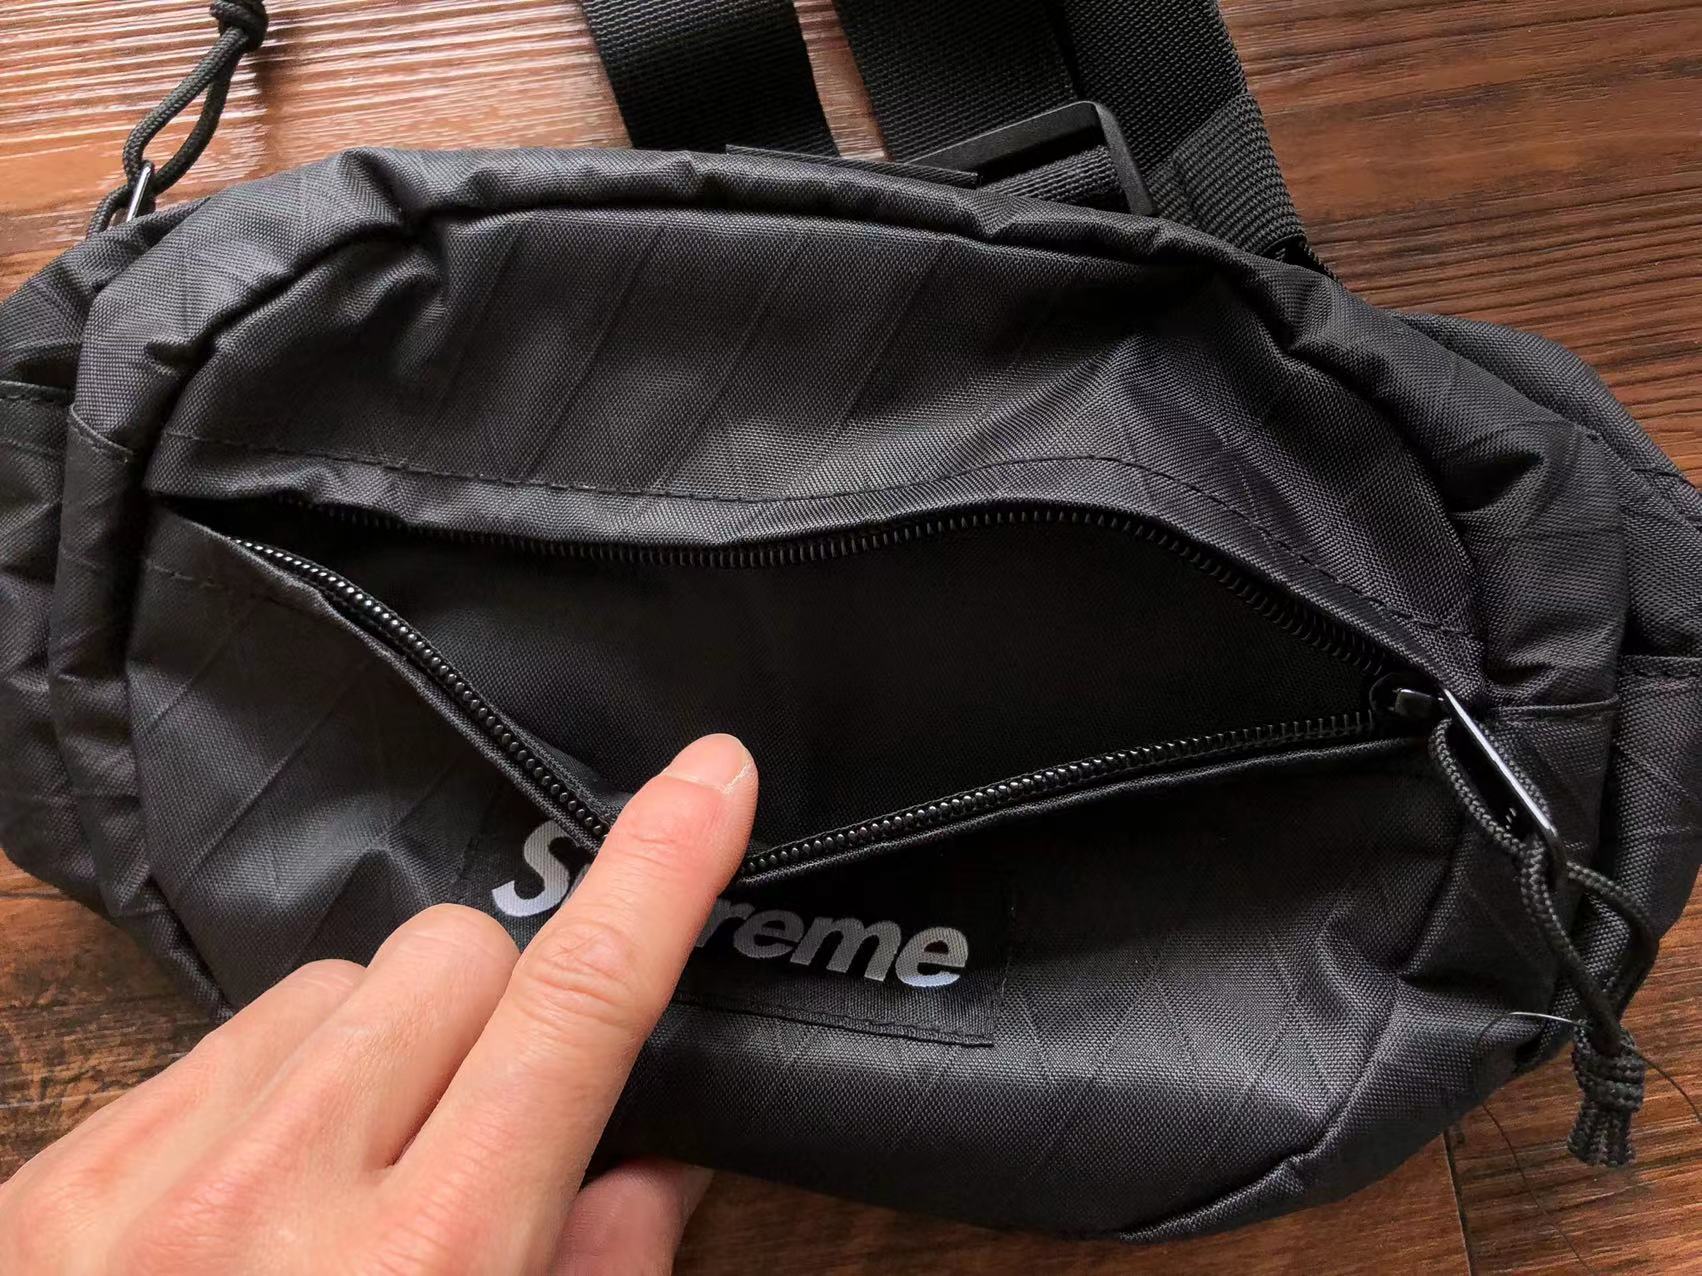 Supreme Waist Bag (FW18) Black — Kick Game